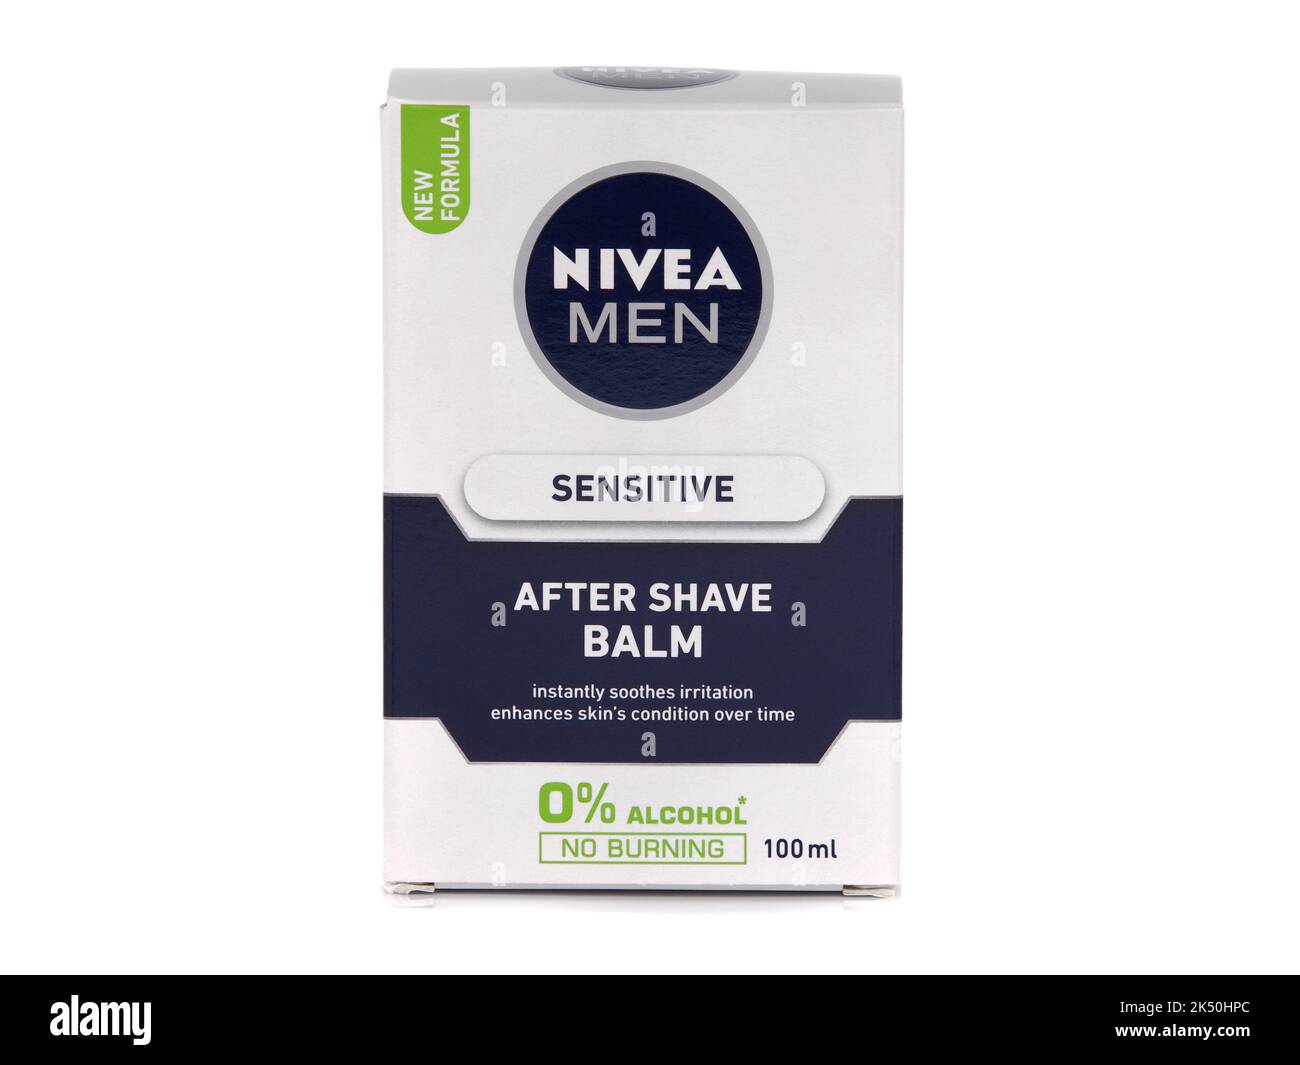 BUCAREST, ROMANIA - 14 NOVEMBRE 2019. Balsamo NIVEA for MEN Sensitive After Shave isolato su bianco Foto Stock